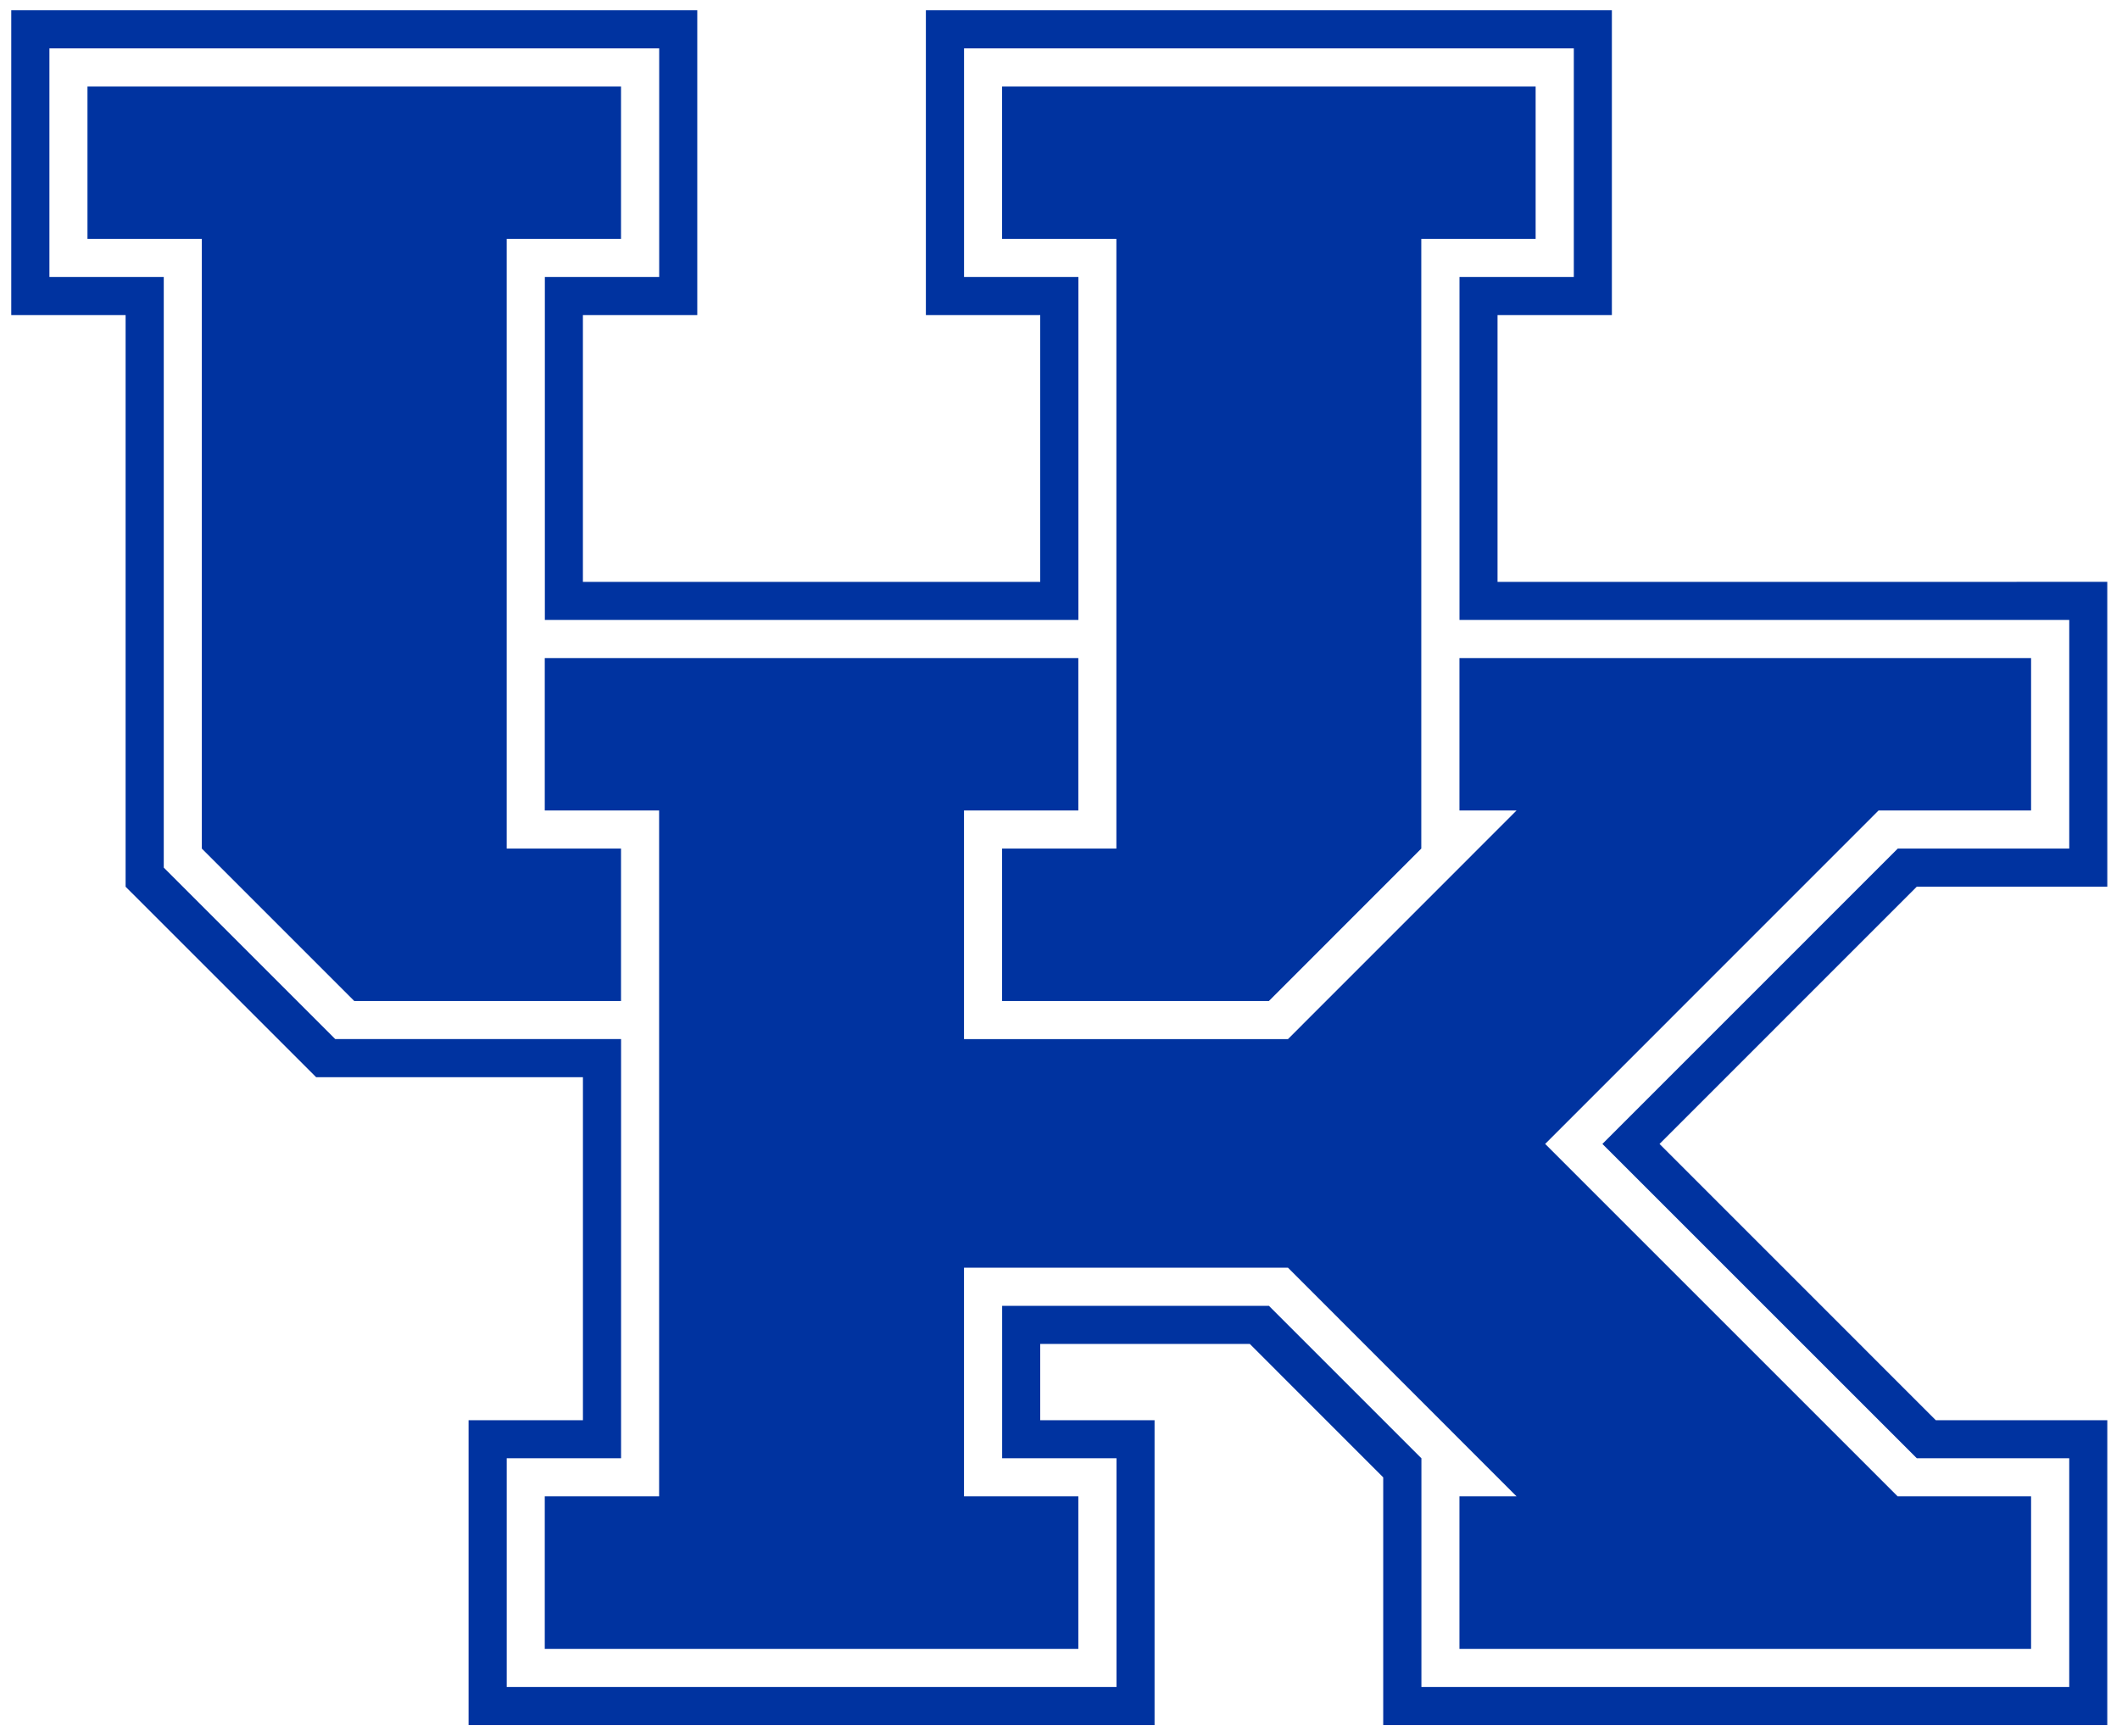 2503px-Kentucky_Wildcats_logo.svg